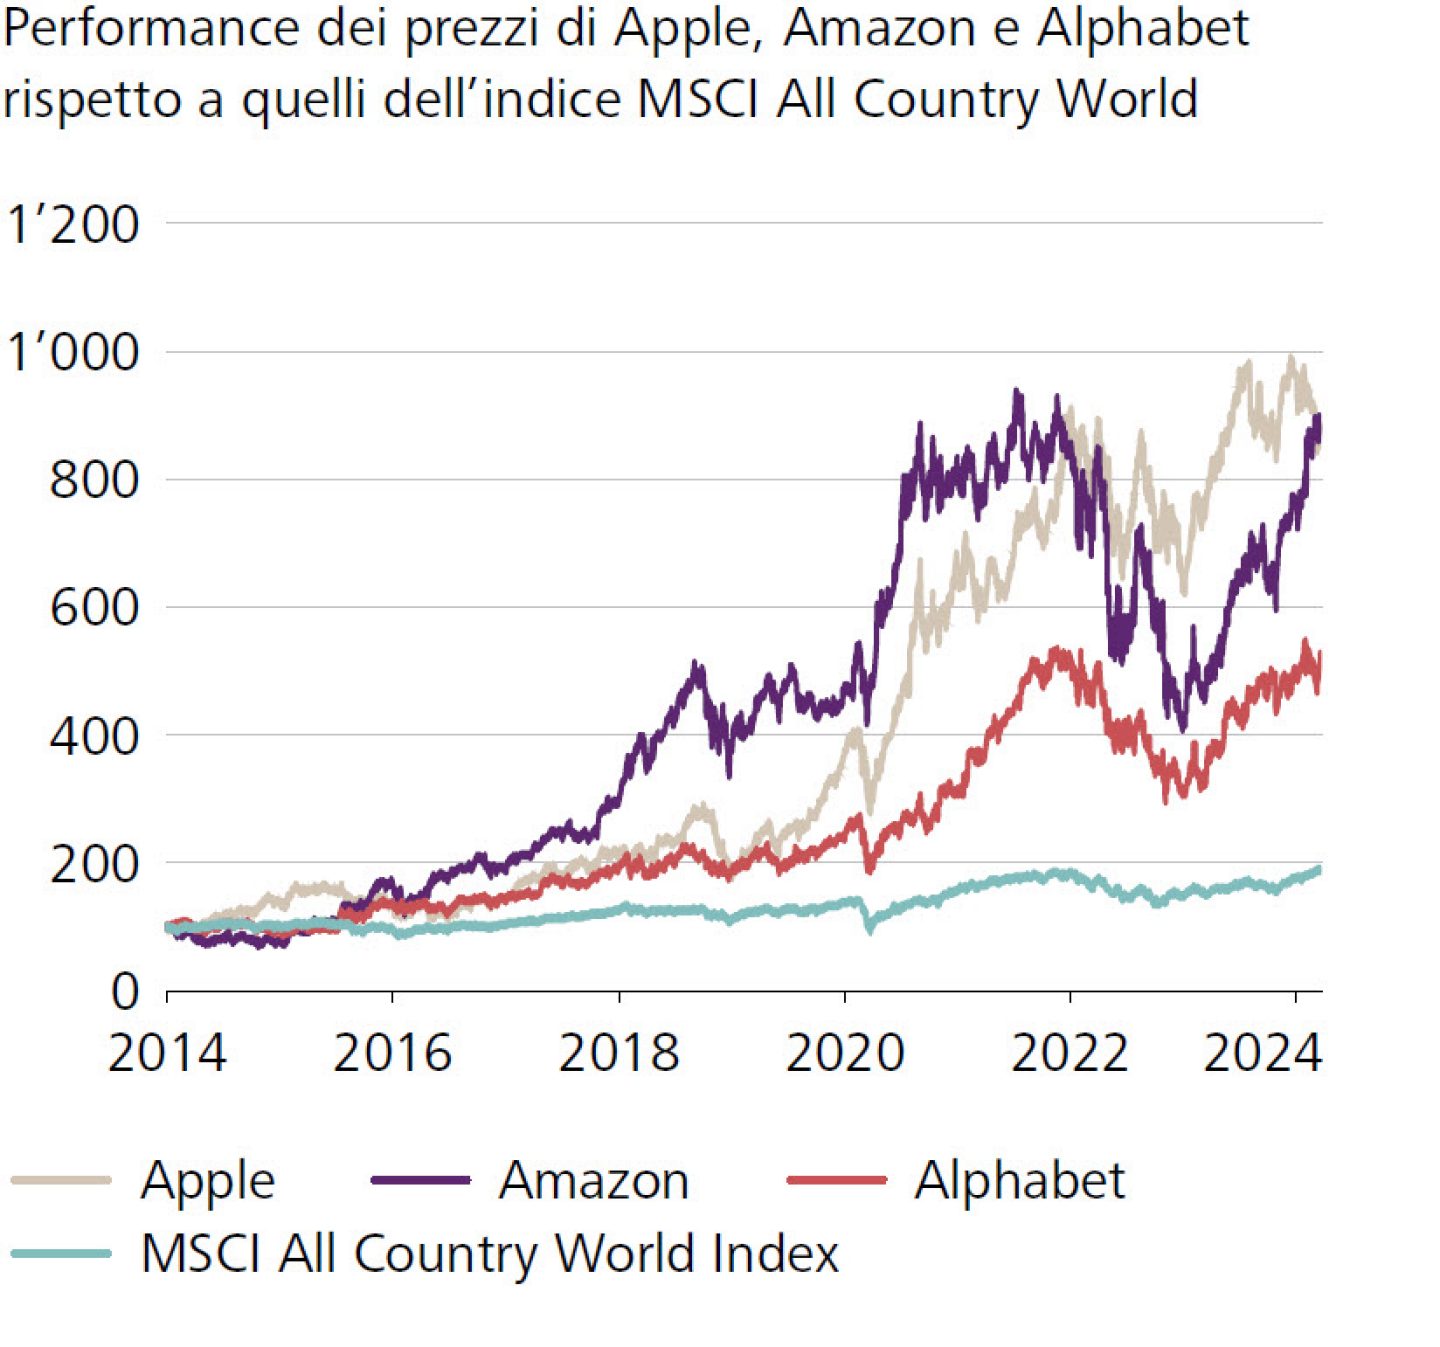 Performance dei prezzi di Apple, Amazon e Alphabet rispetto a quelli dell’indice MSCI All Country World